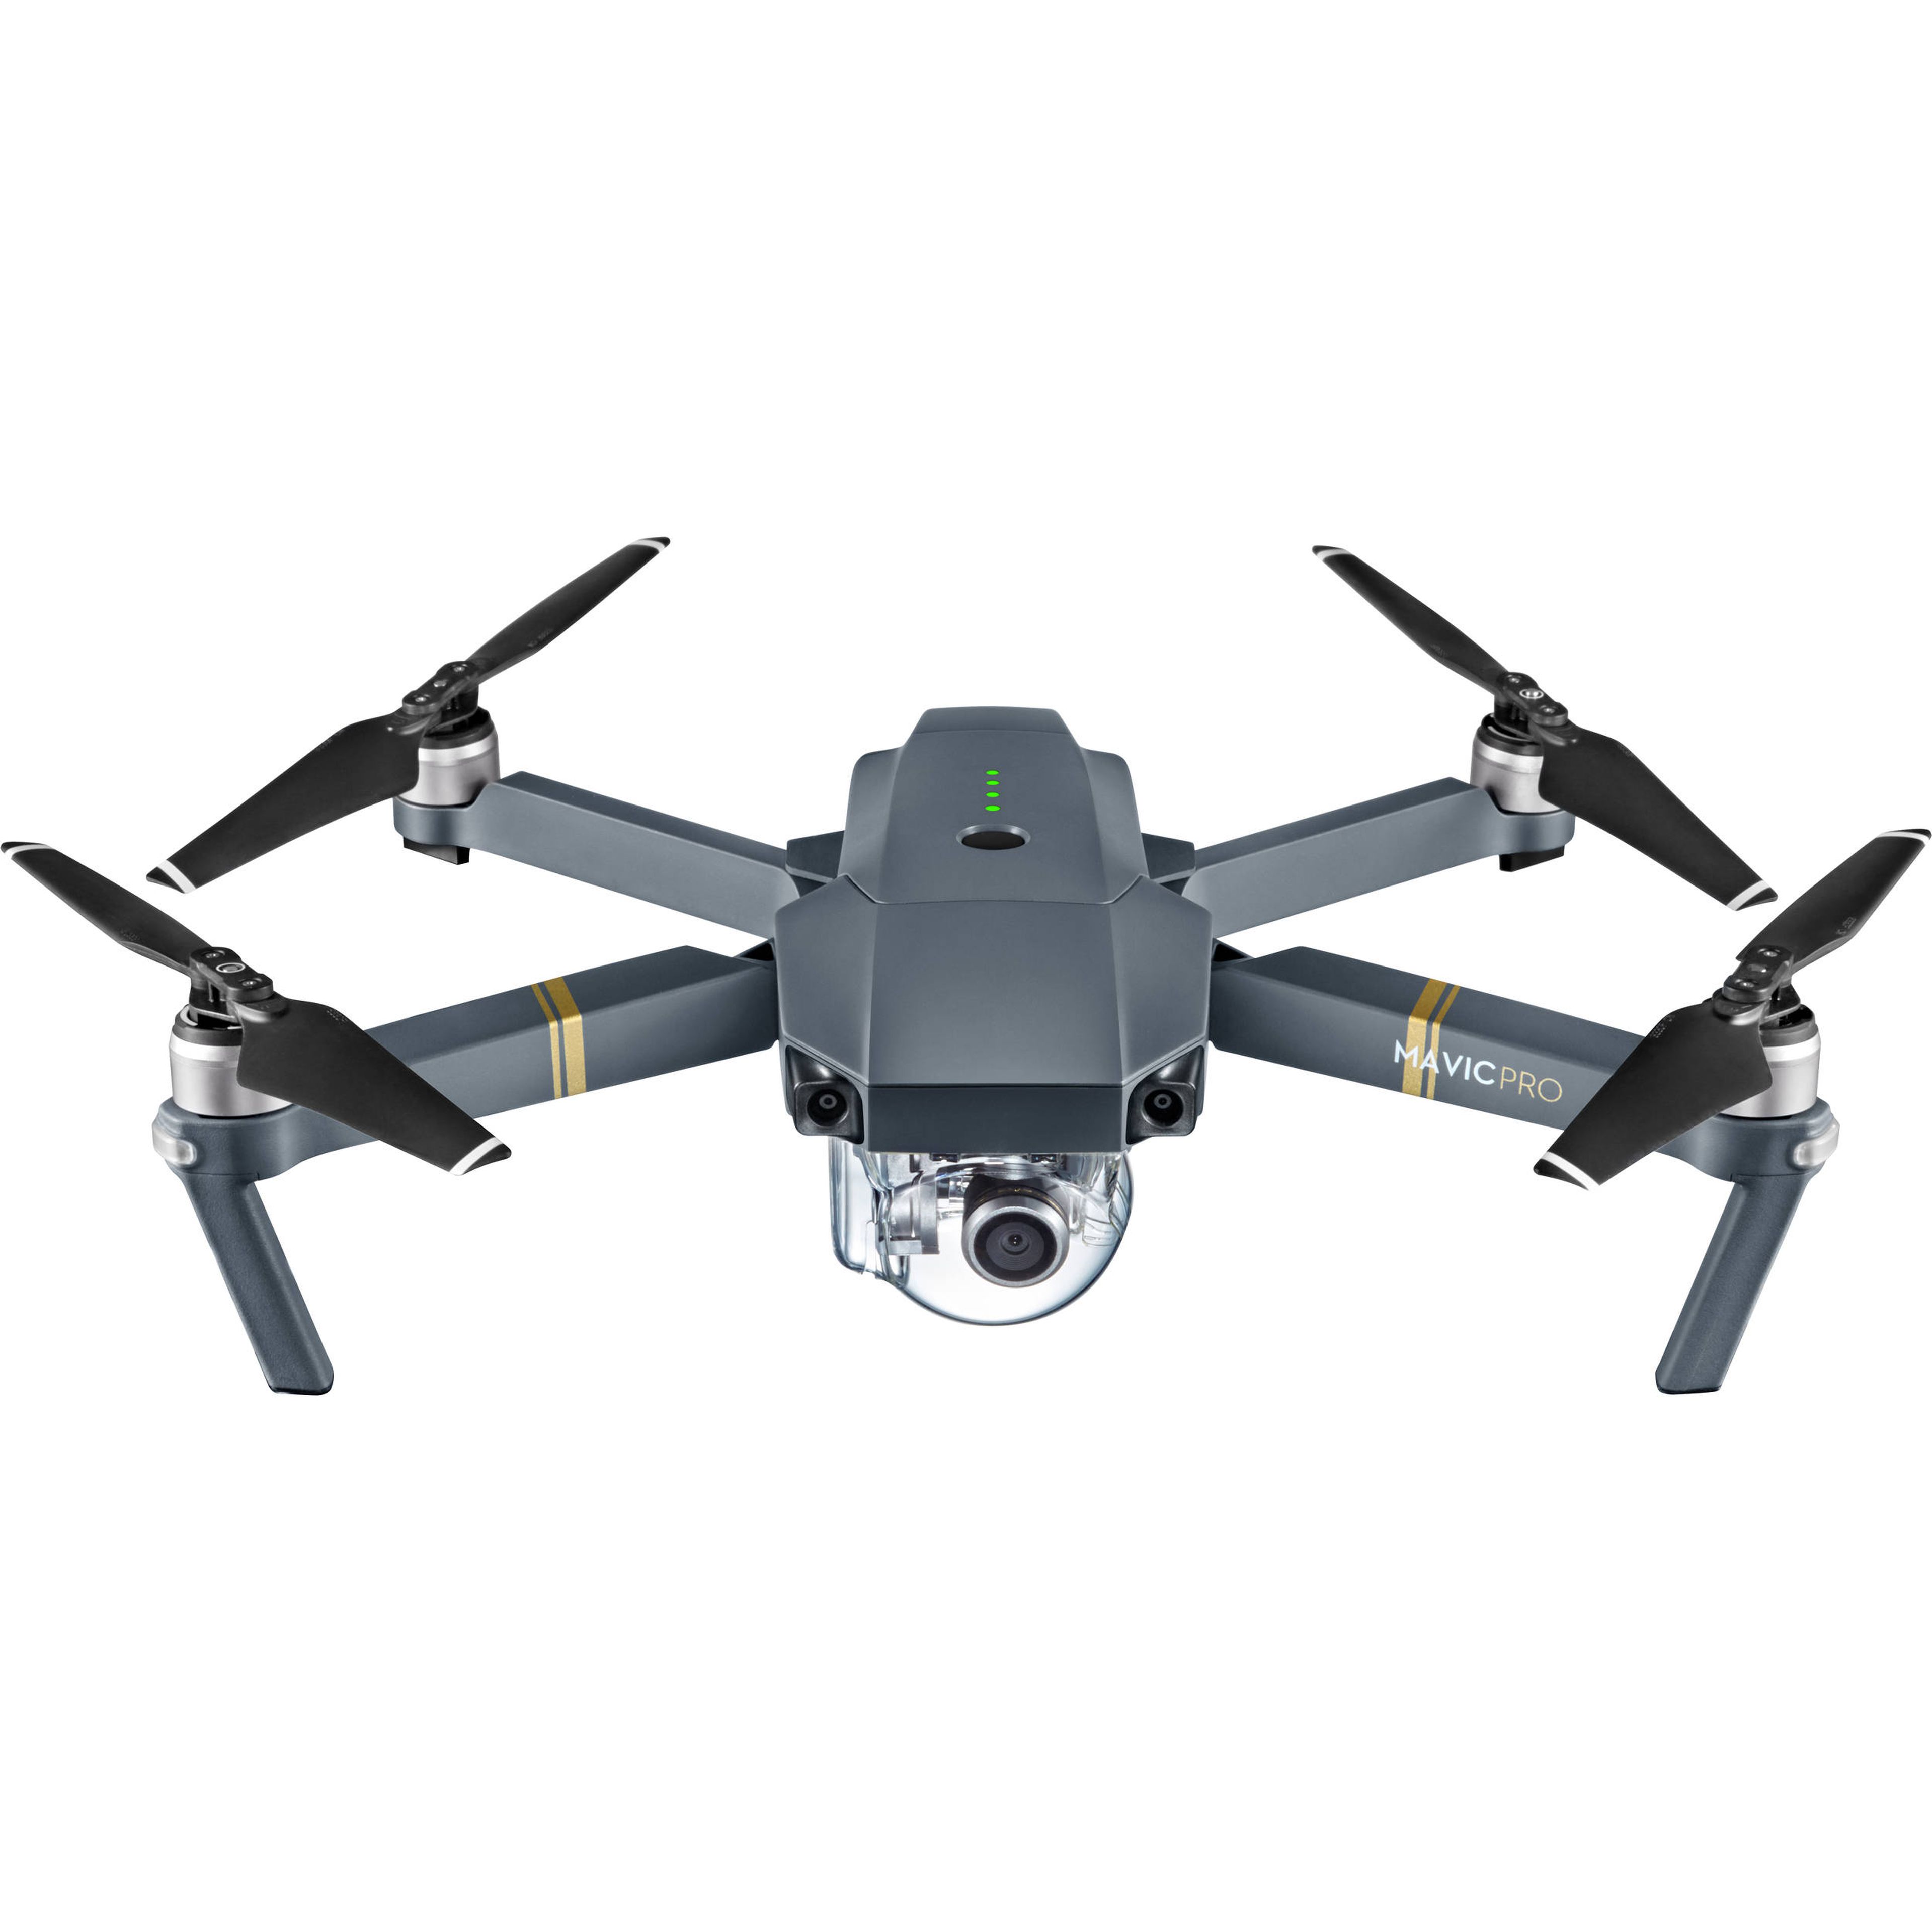 El drone que la DGT está probando para multar